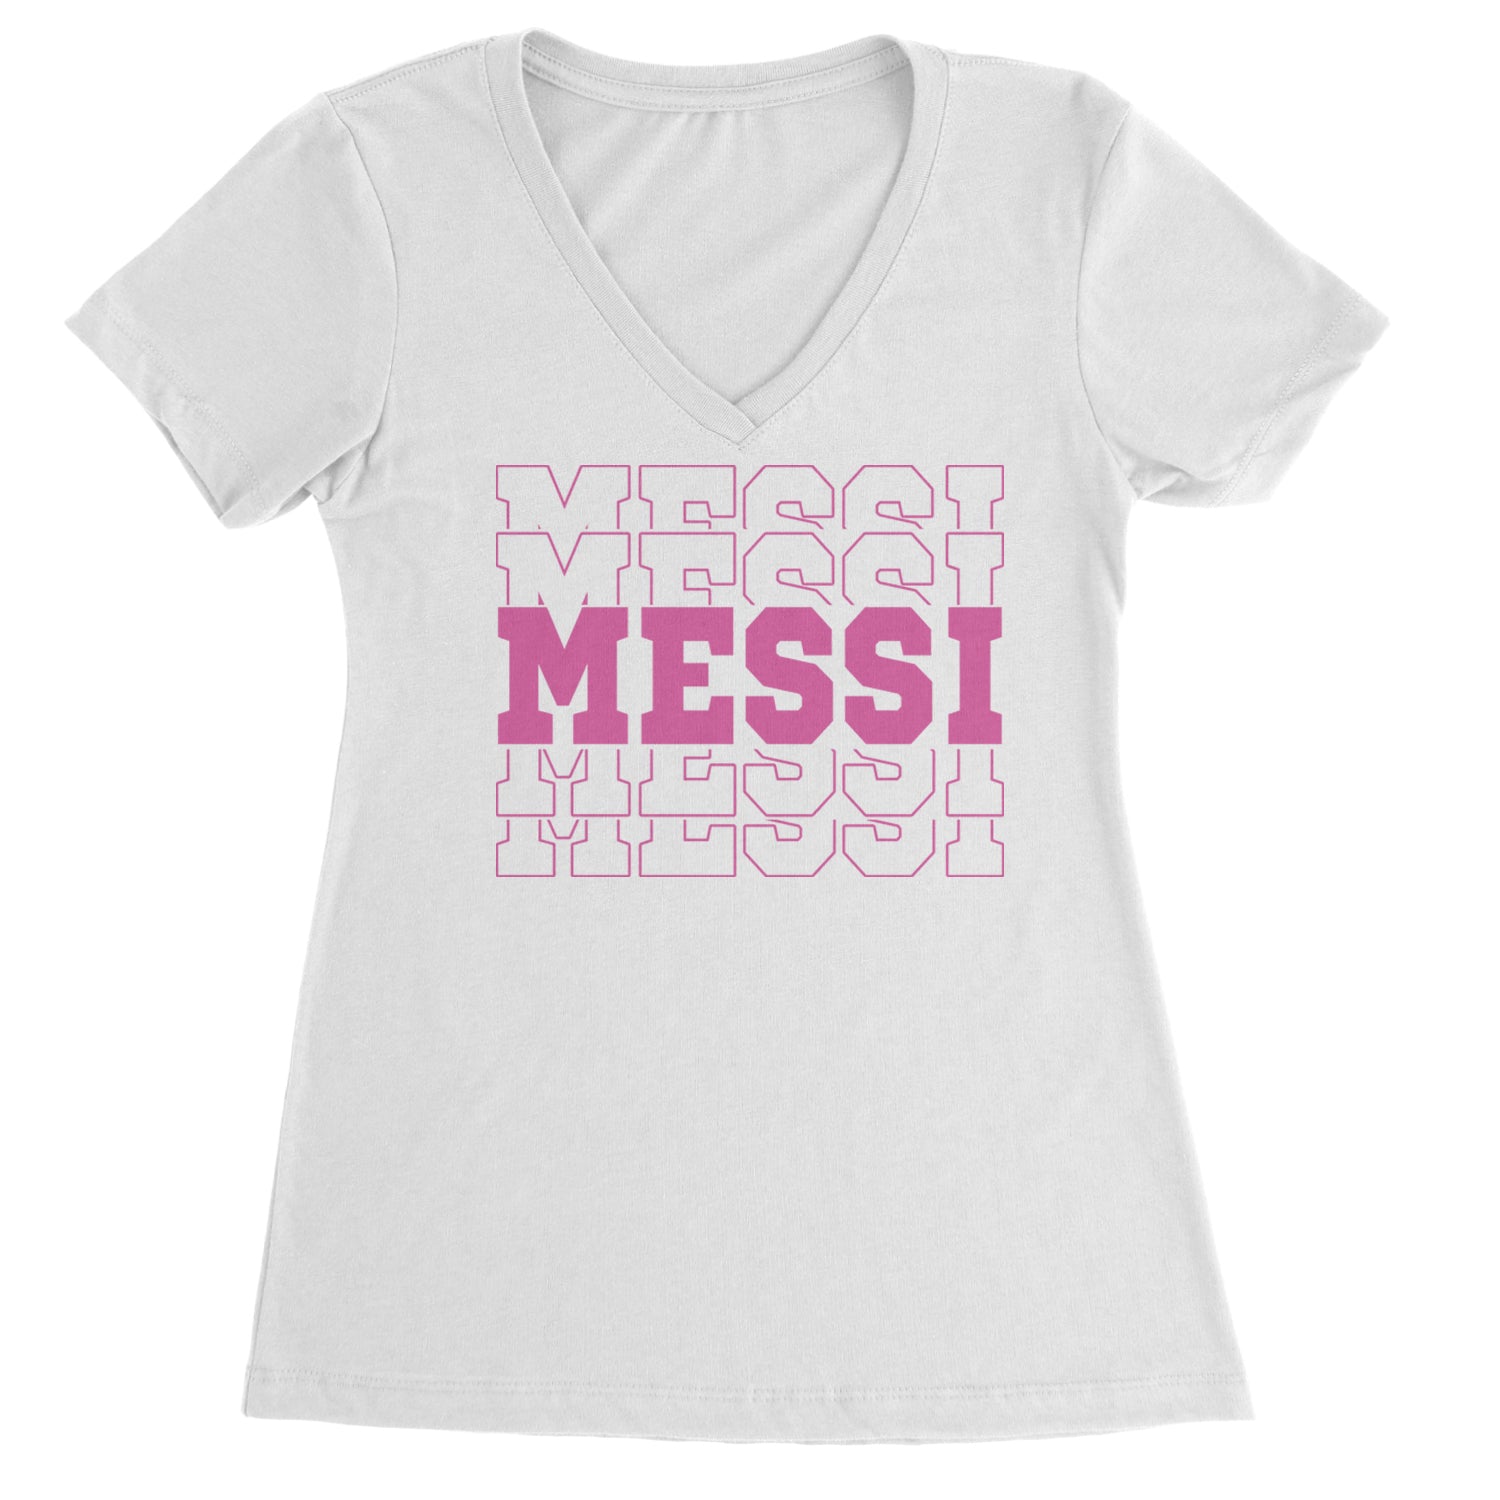 Messi Miami Futbol Ladies V-Neck T-shirt